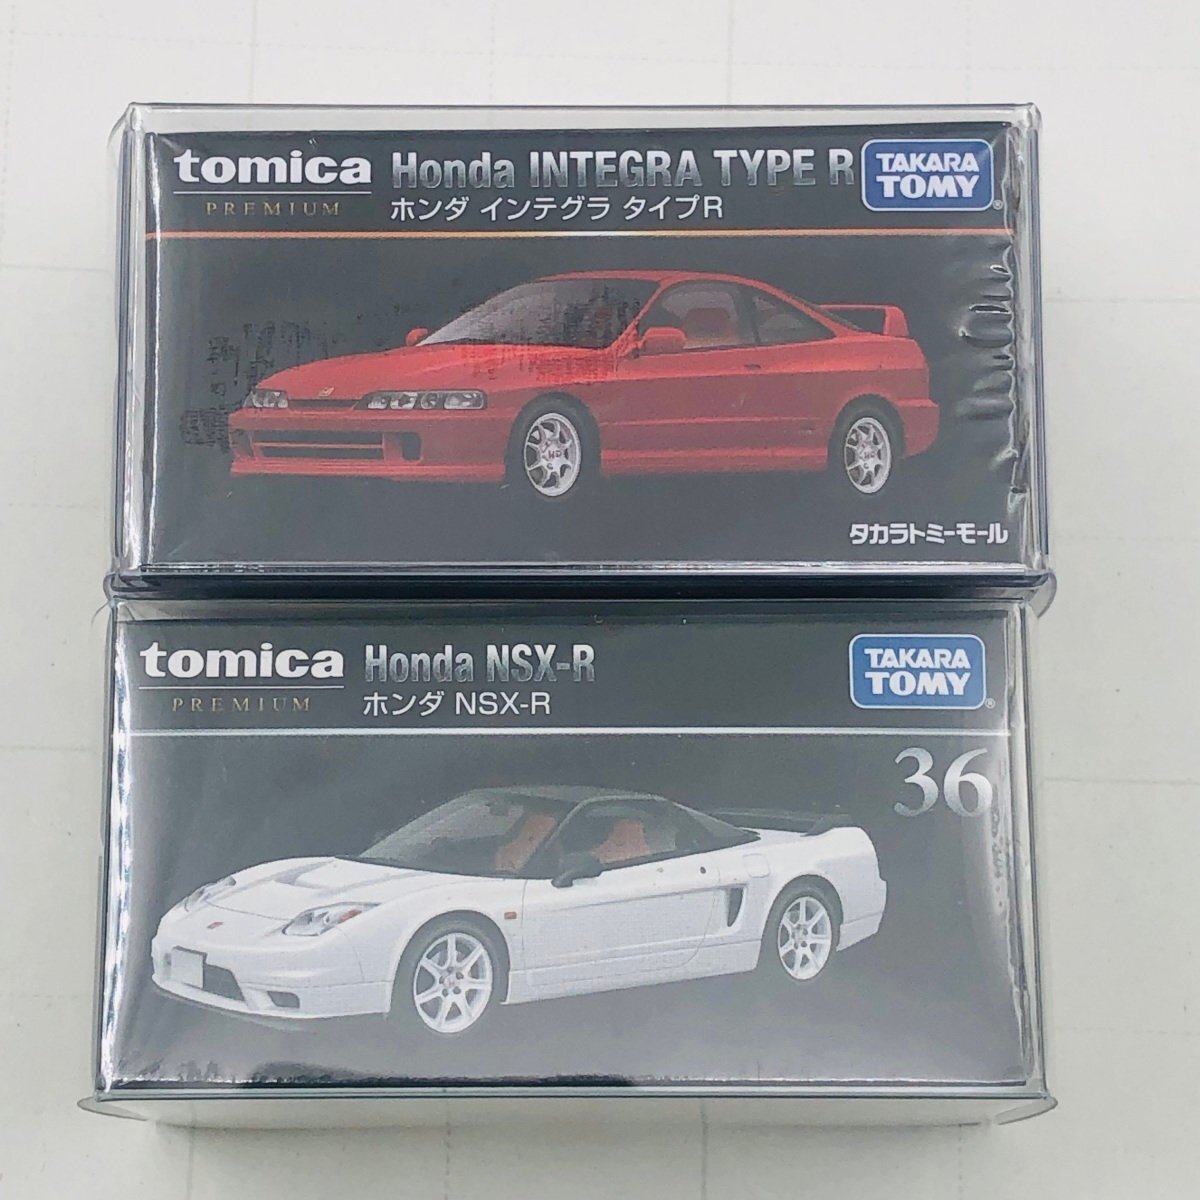 新品未開封 タカラトミー トミカ プレミアム ホンダ インテグラ タイプR 2種セット tomica PREMIUM Honda INTEGRA TYPE Rの画像1